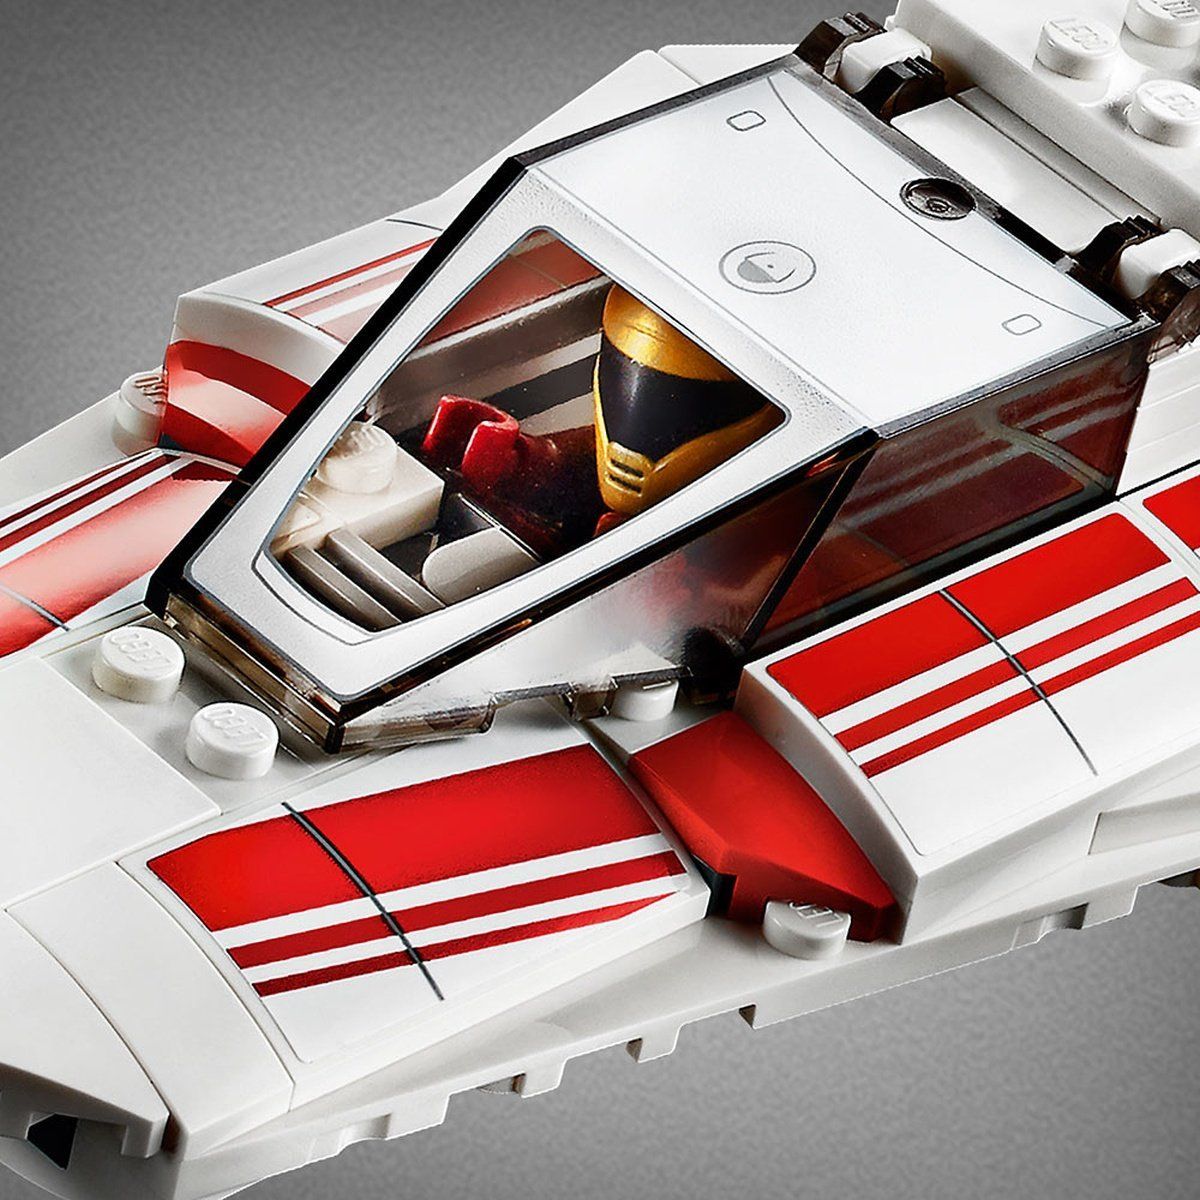 LEGO Star Wars Oktober Neuheiten: Alle Triple Force Friday Sets im Detail